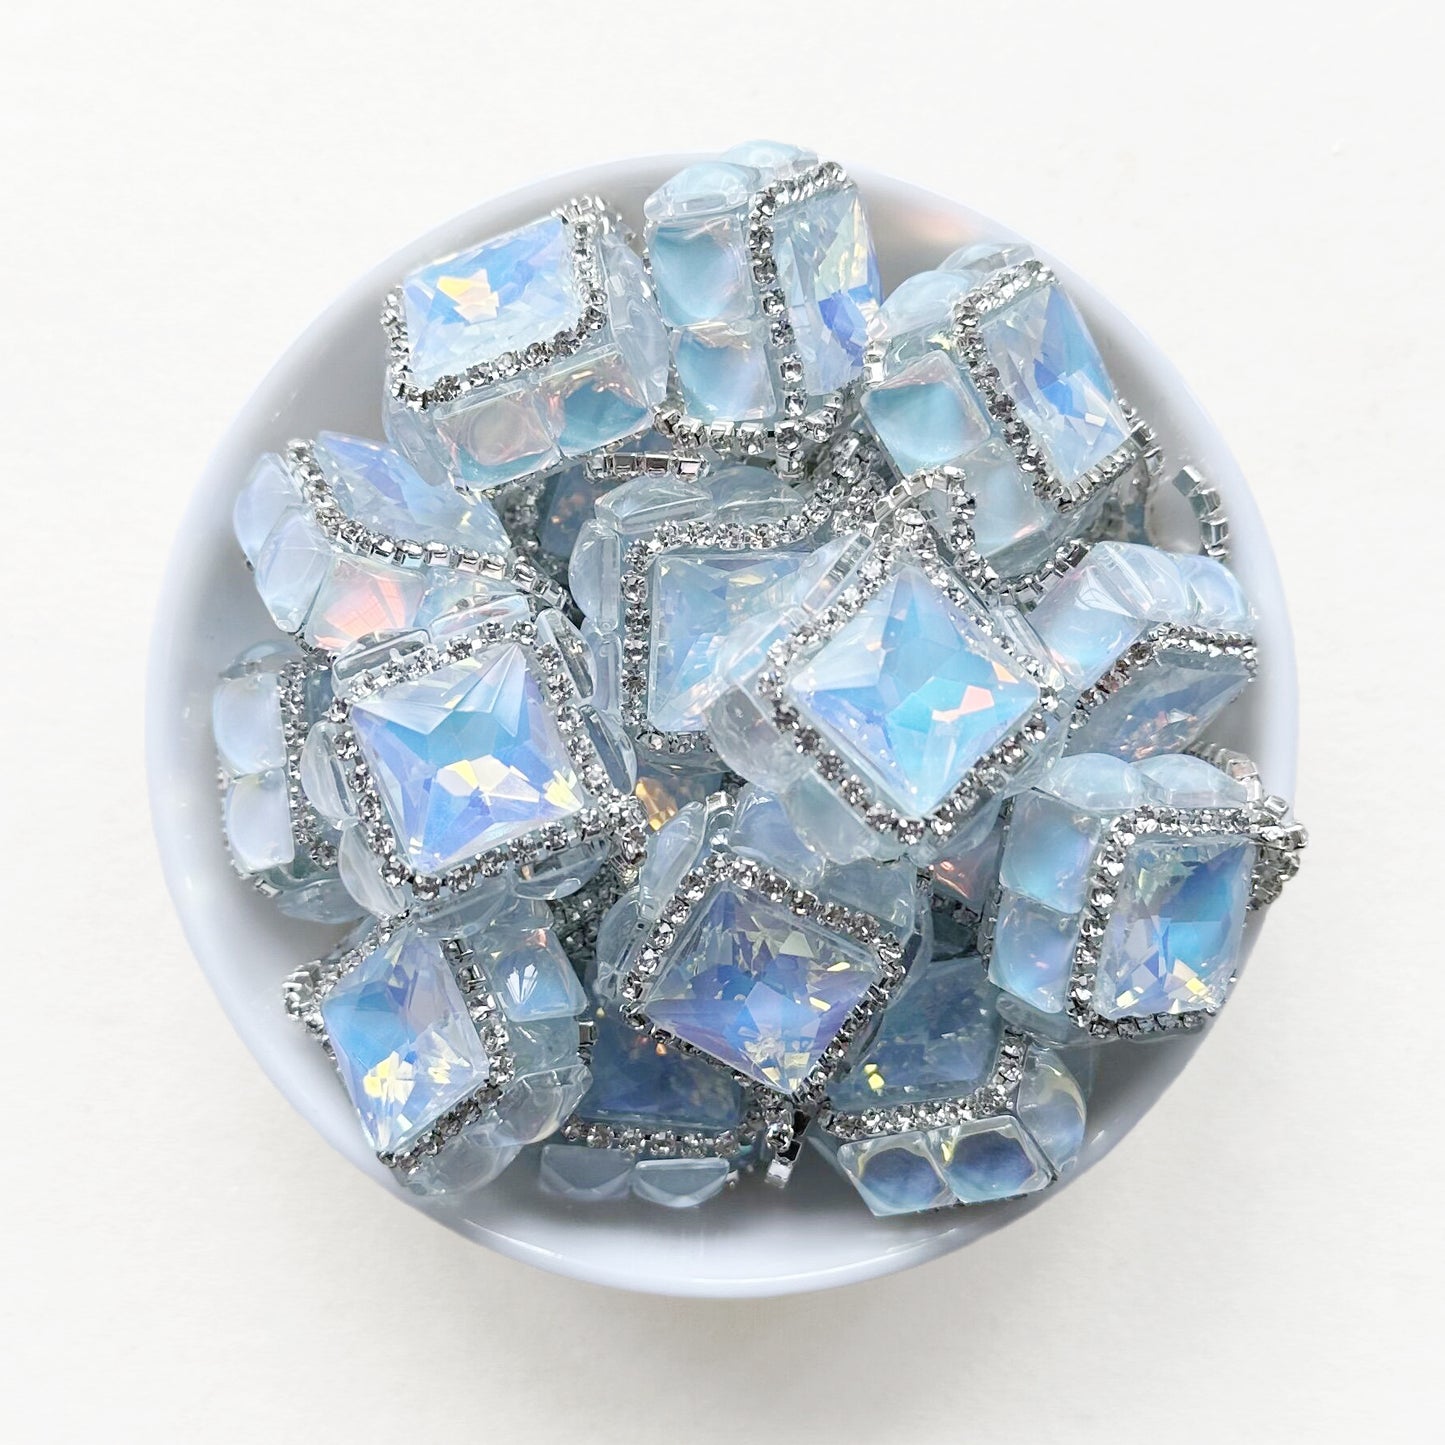 Sparkling Light Blue Square Gem Beads, Bling Dangly Beads,Pen Focal